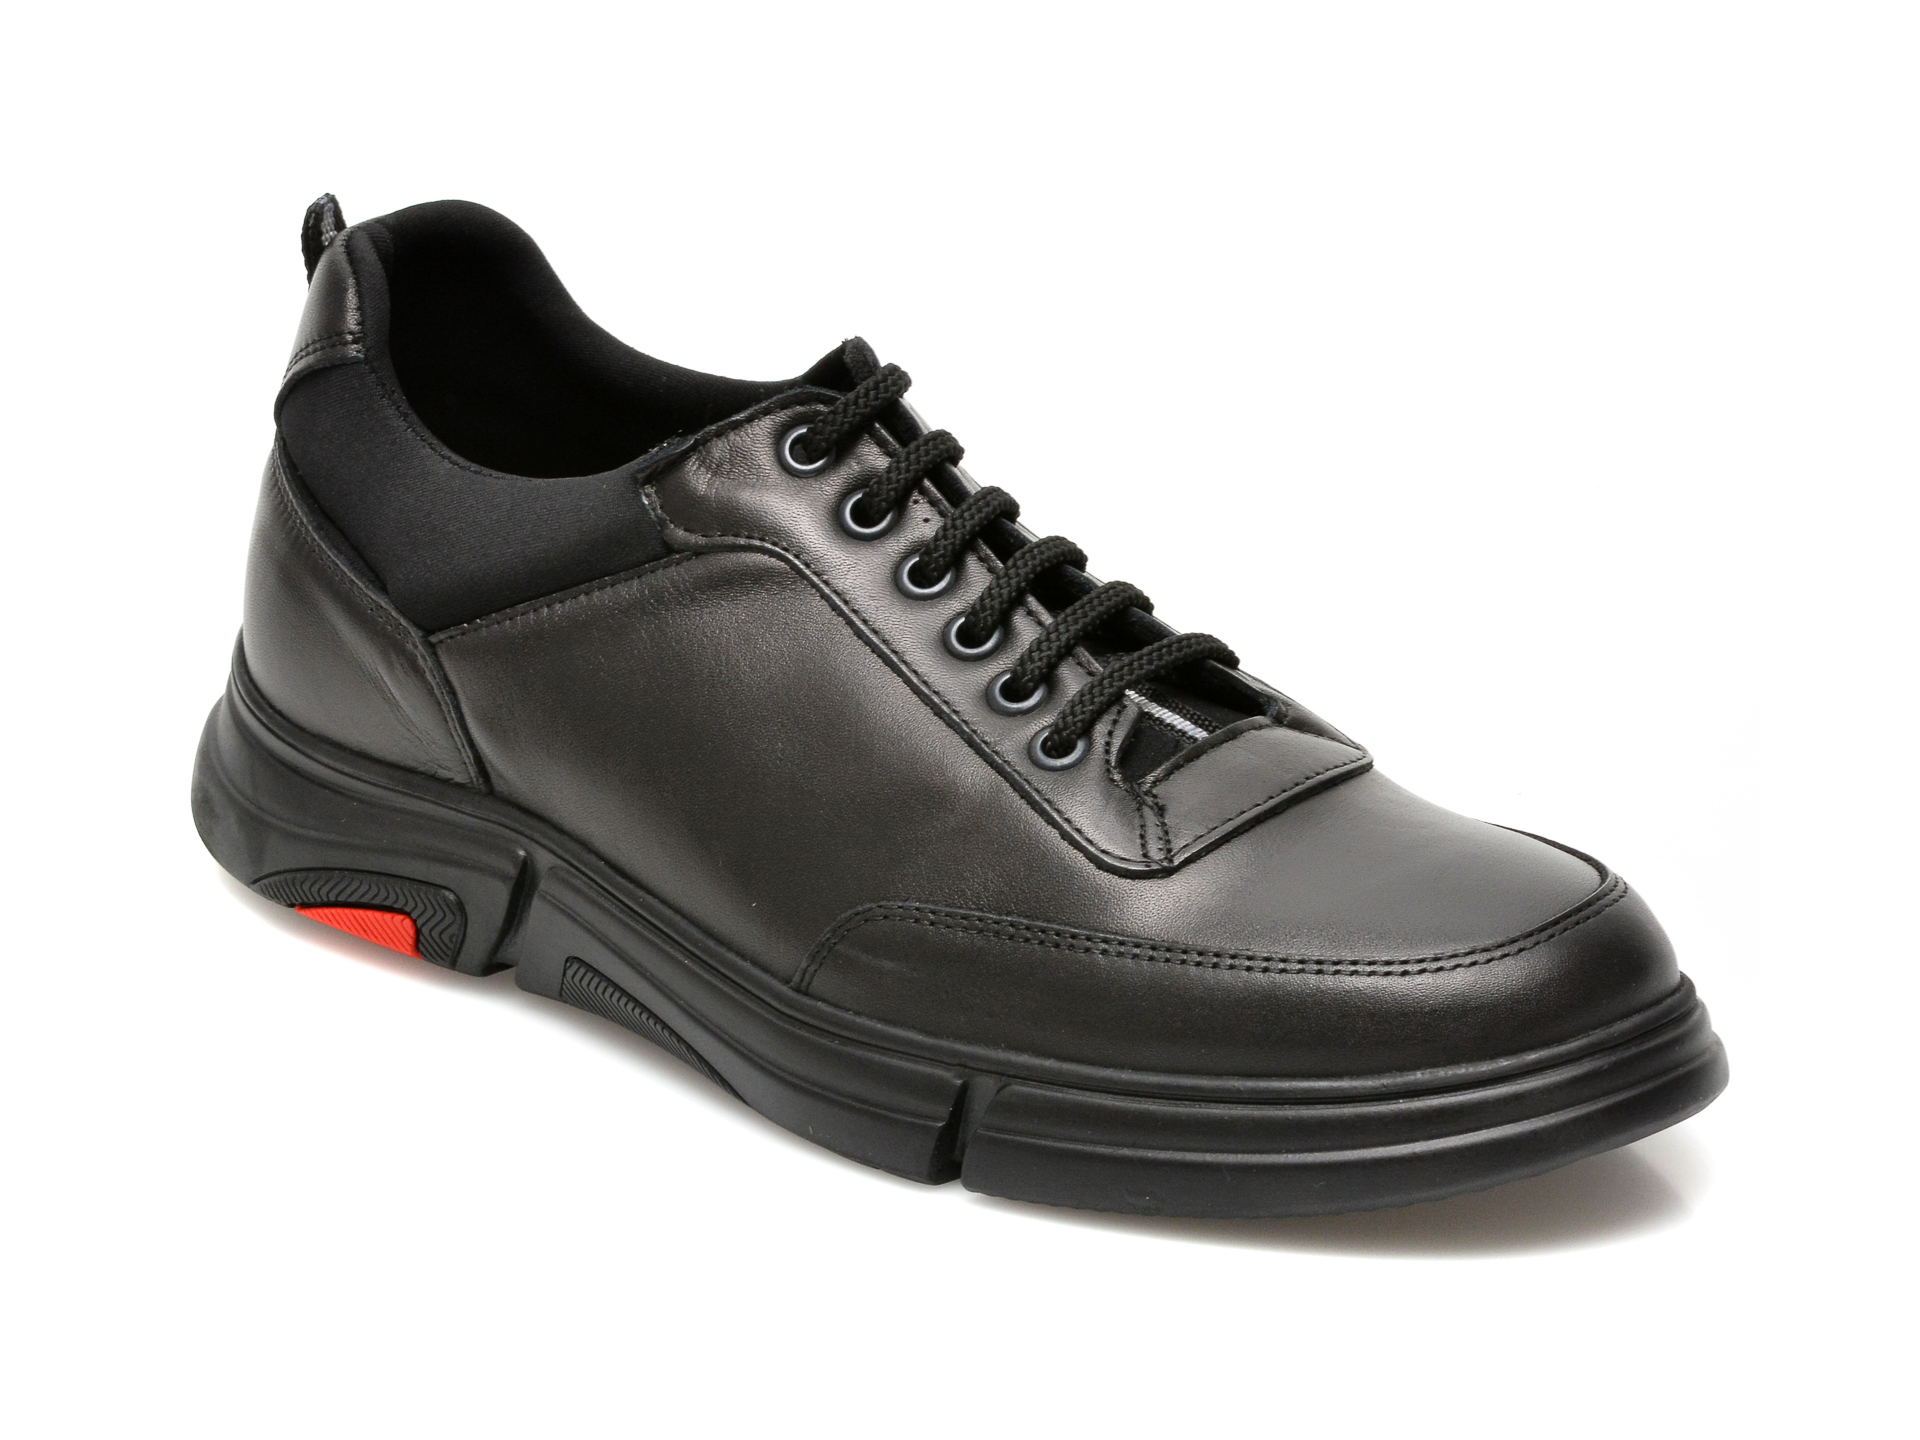 Pantofi OTTER negri, PRN700, din piele naturala